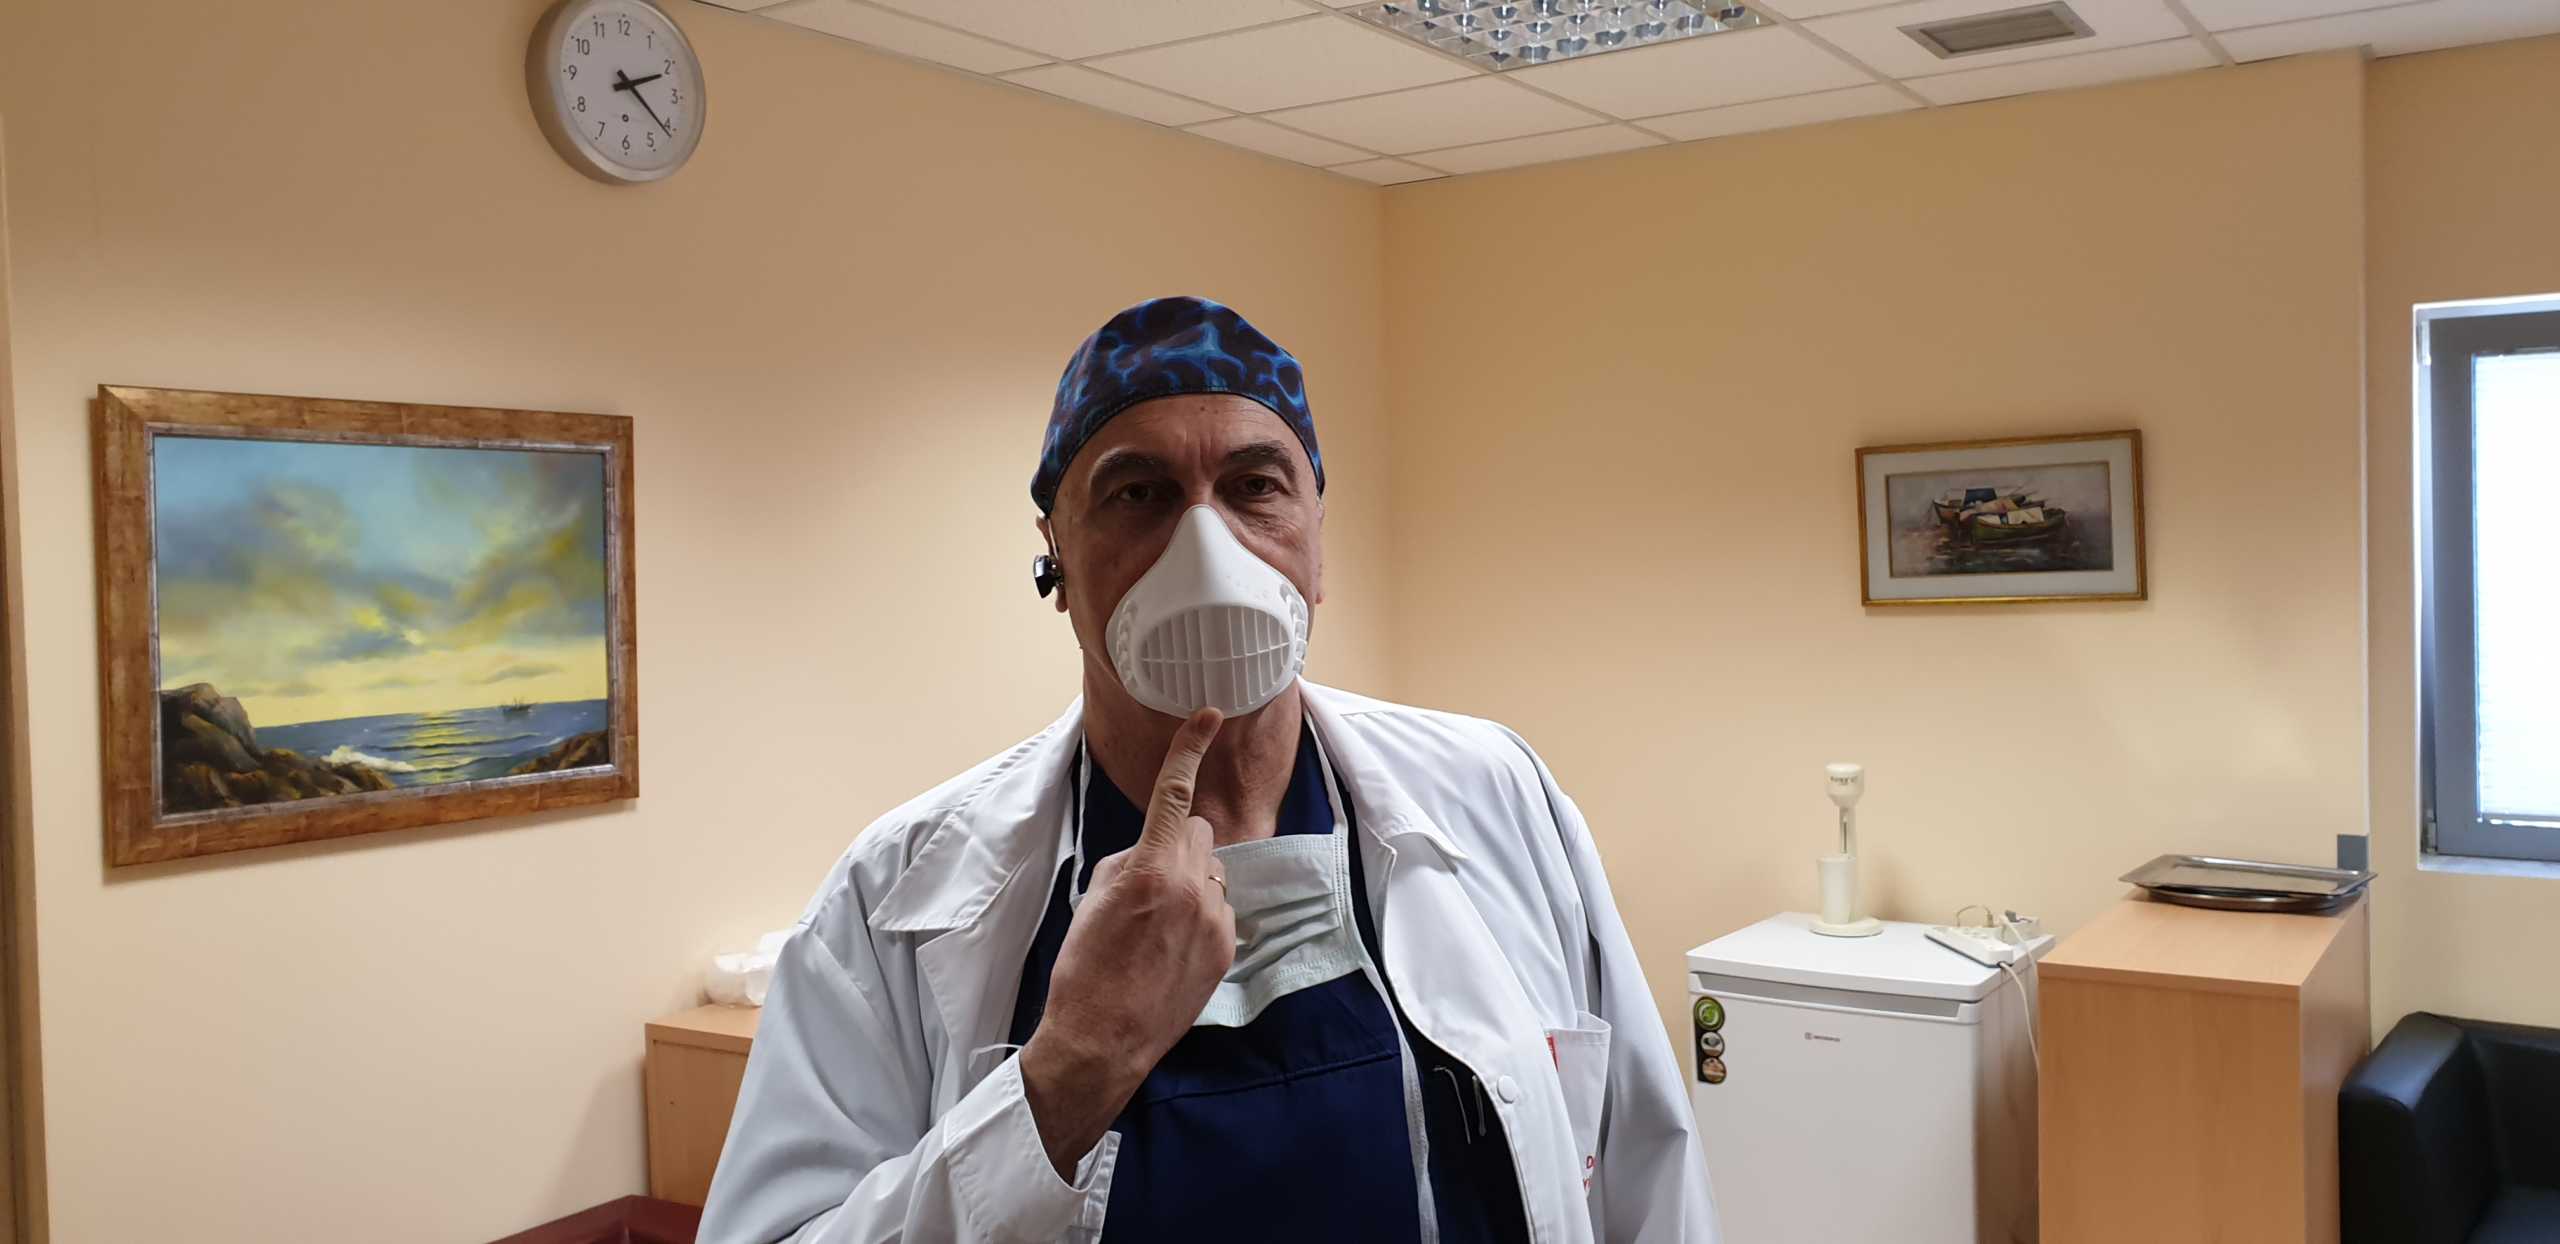 Θεσσαλονίκη: Νέα μάσκα υψηλής προστασίας! “Εύκολη αναπνοή και καθολική θωράκιση του οργανισμού” (Φωτό)